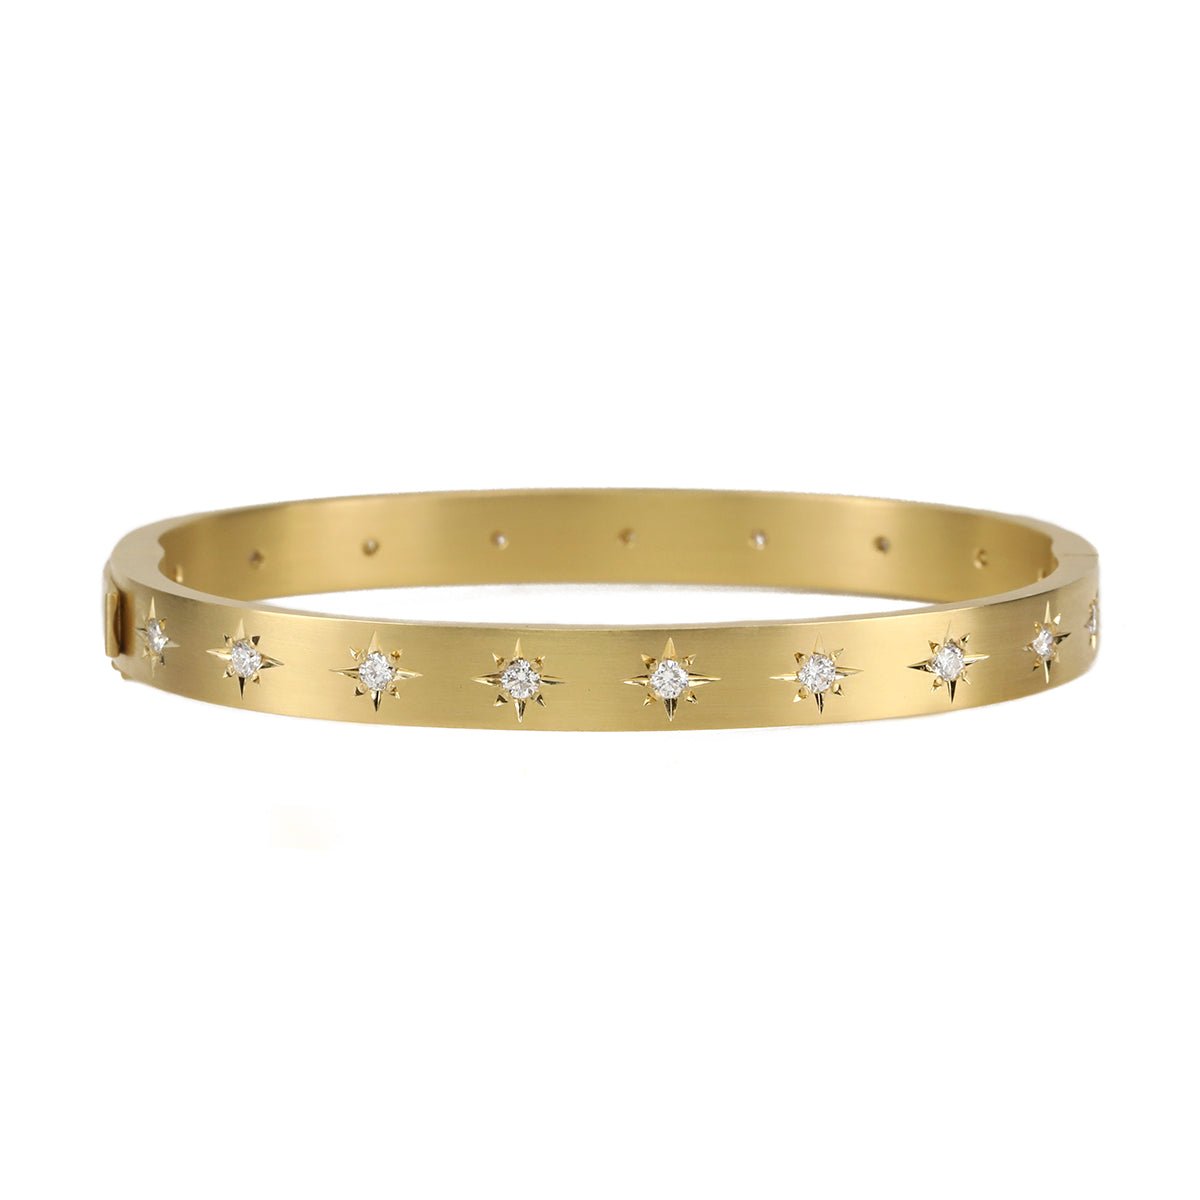 Caroline Ellen Gold Wide Hinged Bangle Bracelet with 18 Star-Set Diamonds